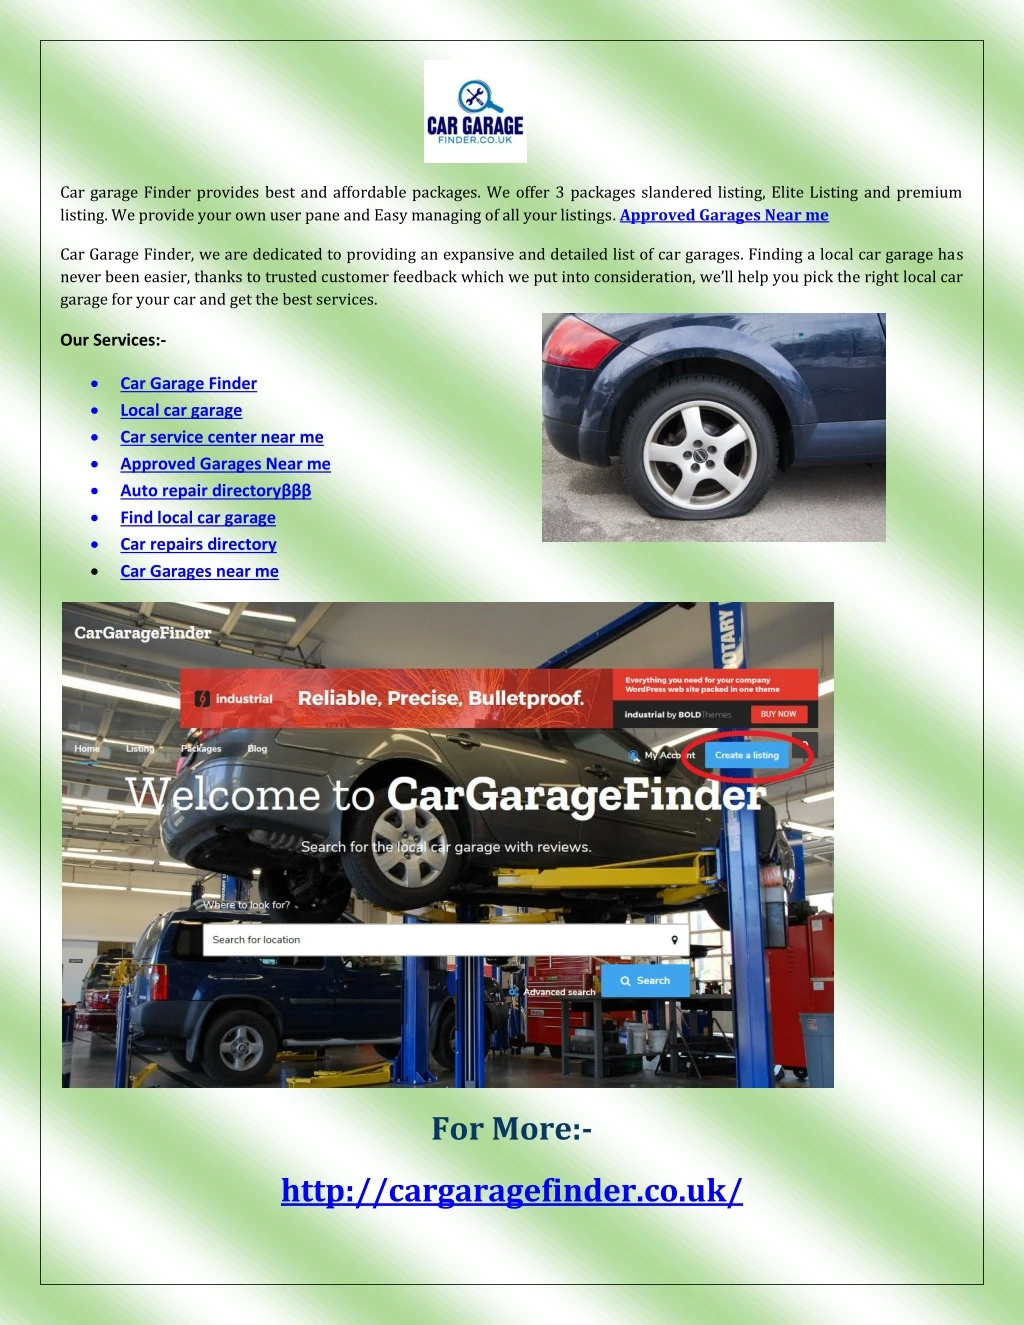 car garage finder provides best and affordable